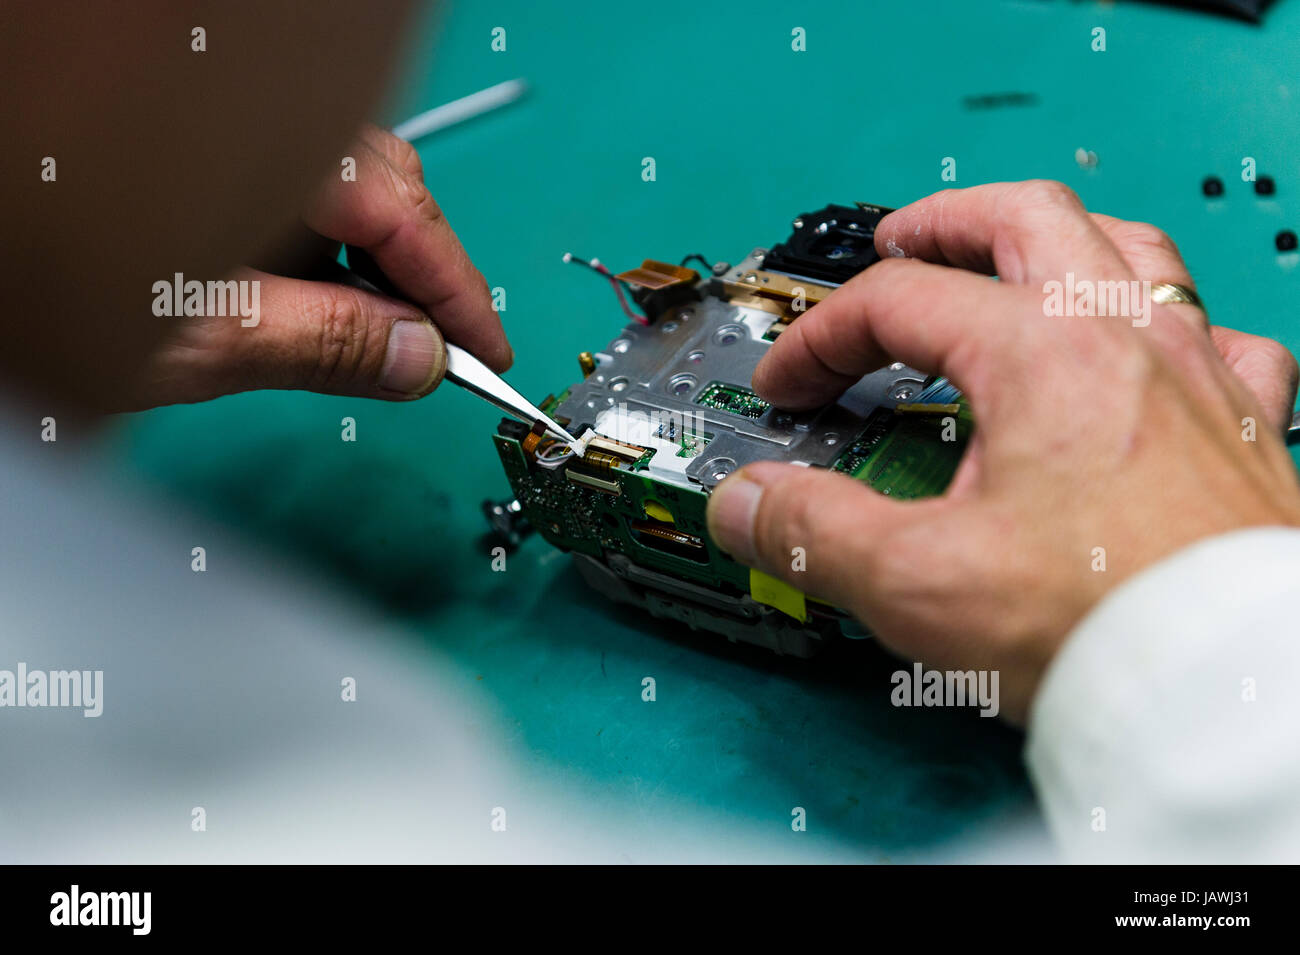 Ein Kamera-Techniker repariert Sensor, Leiterplatte und CPU einer Digitalkamera. Stockfoto